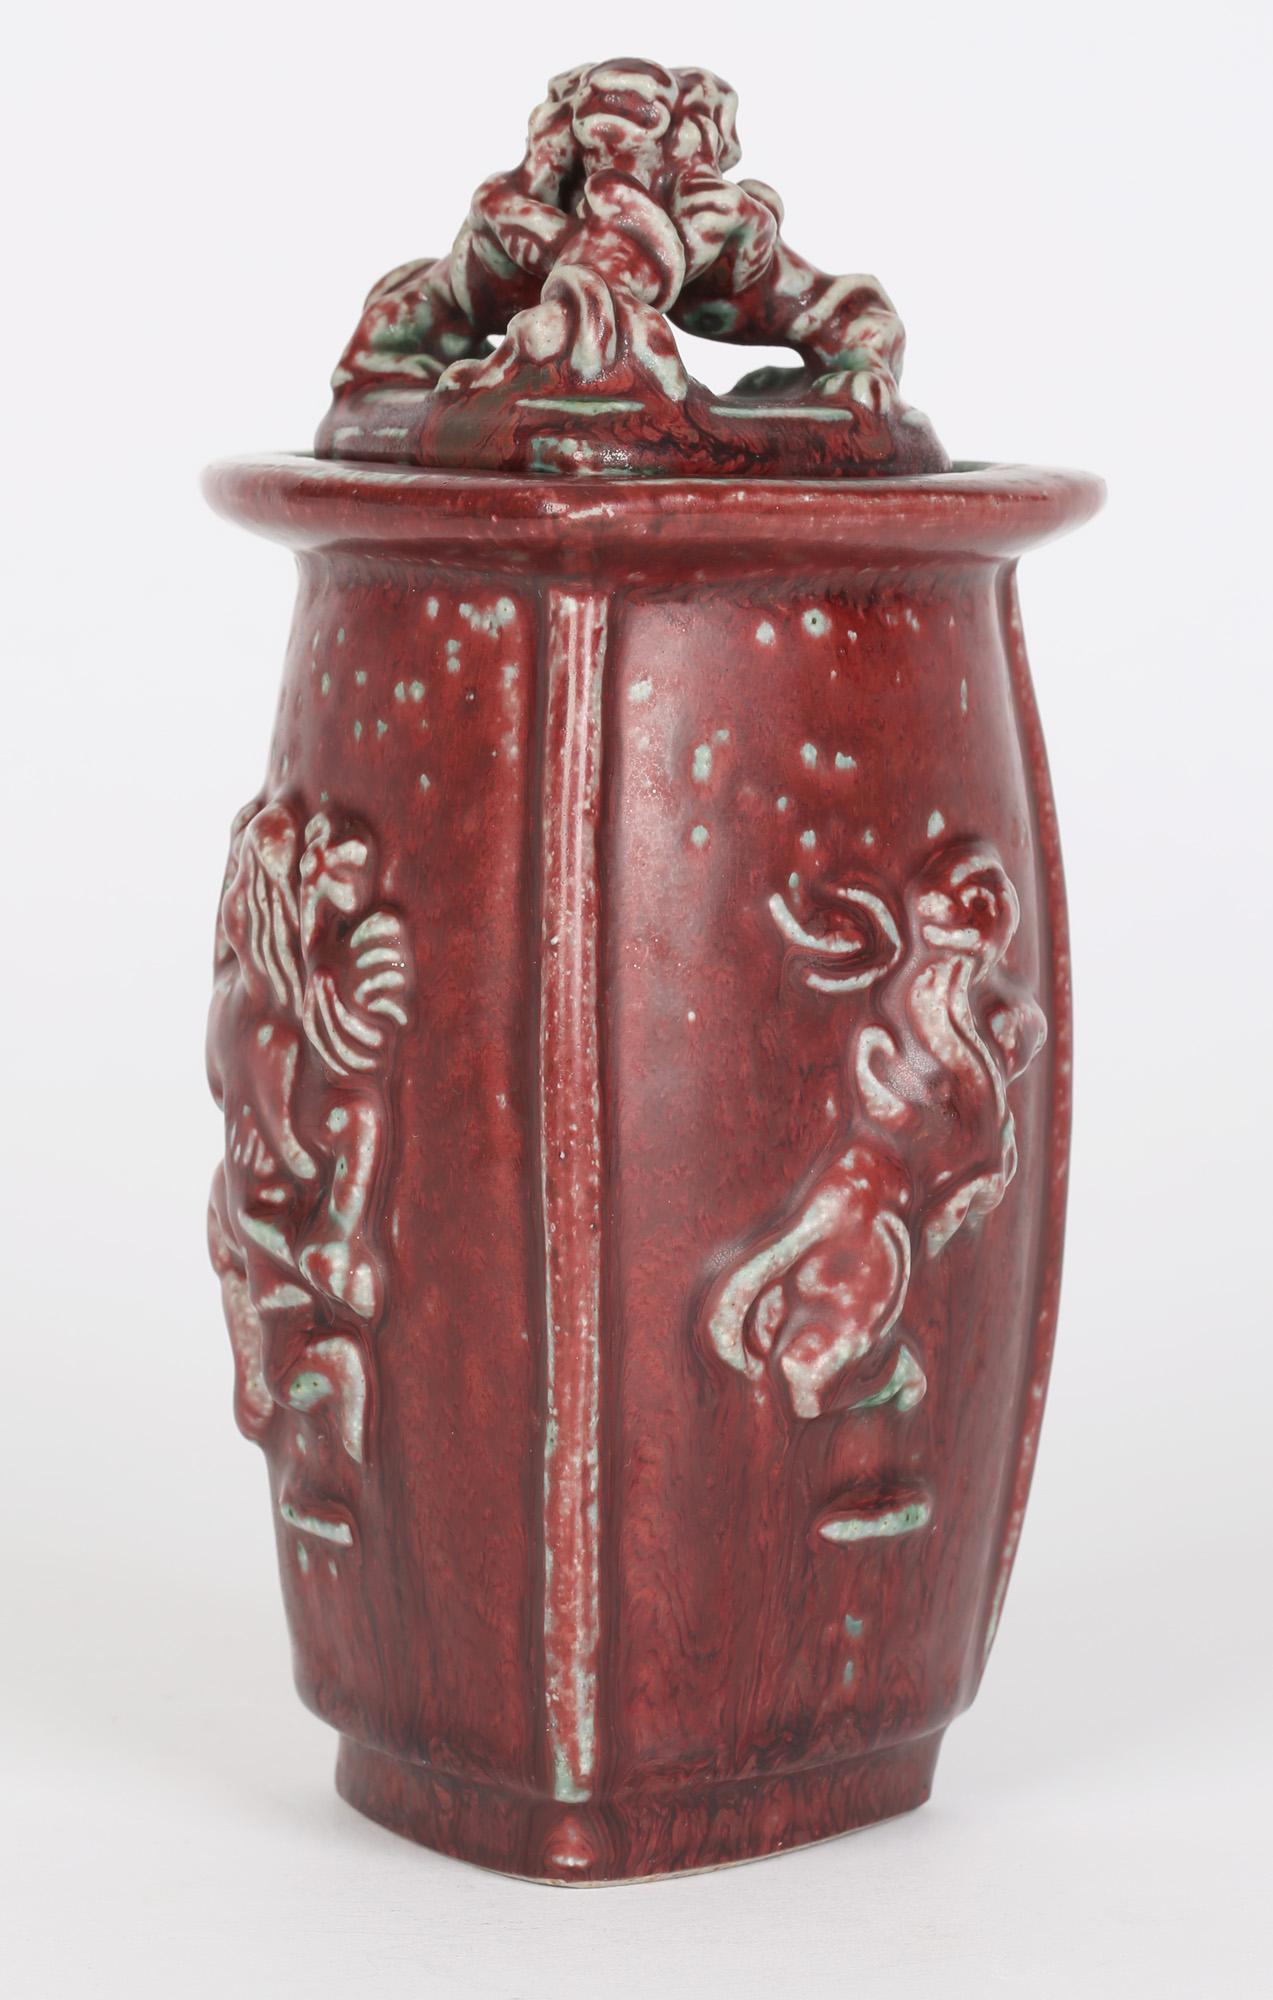 Glazed Bode Willumsen Royal Copenhagen Mythical Figure Sculptural Lidded Pottery Jar For Sale